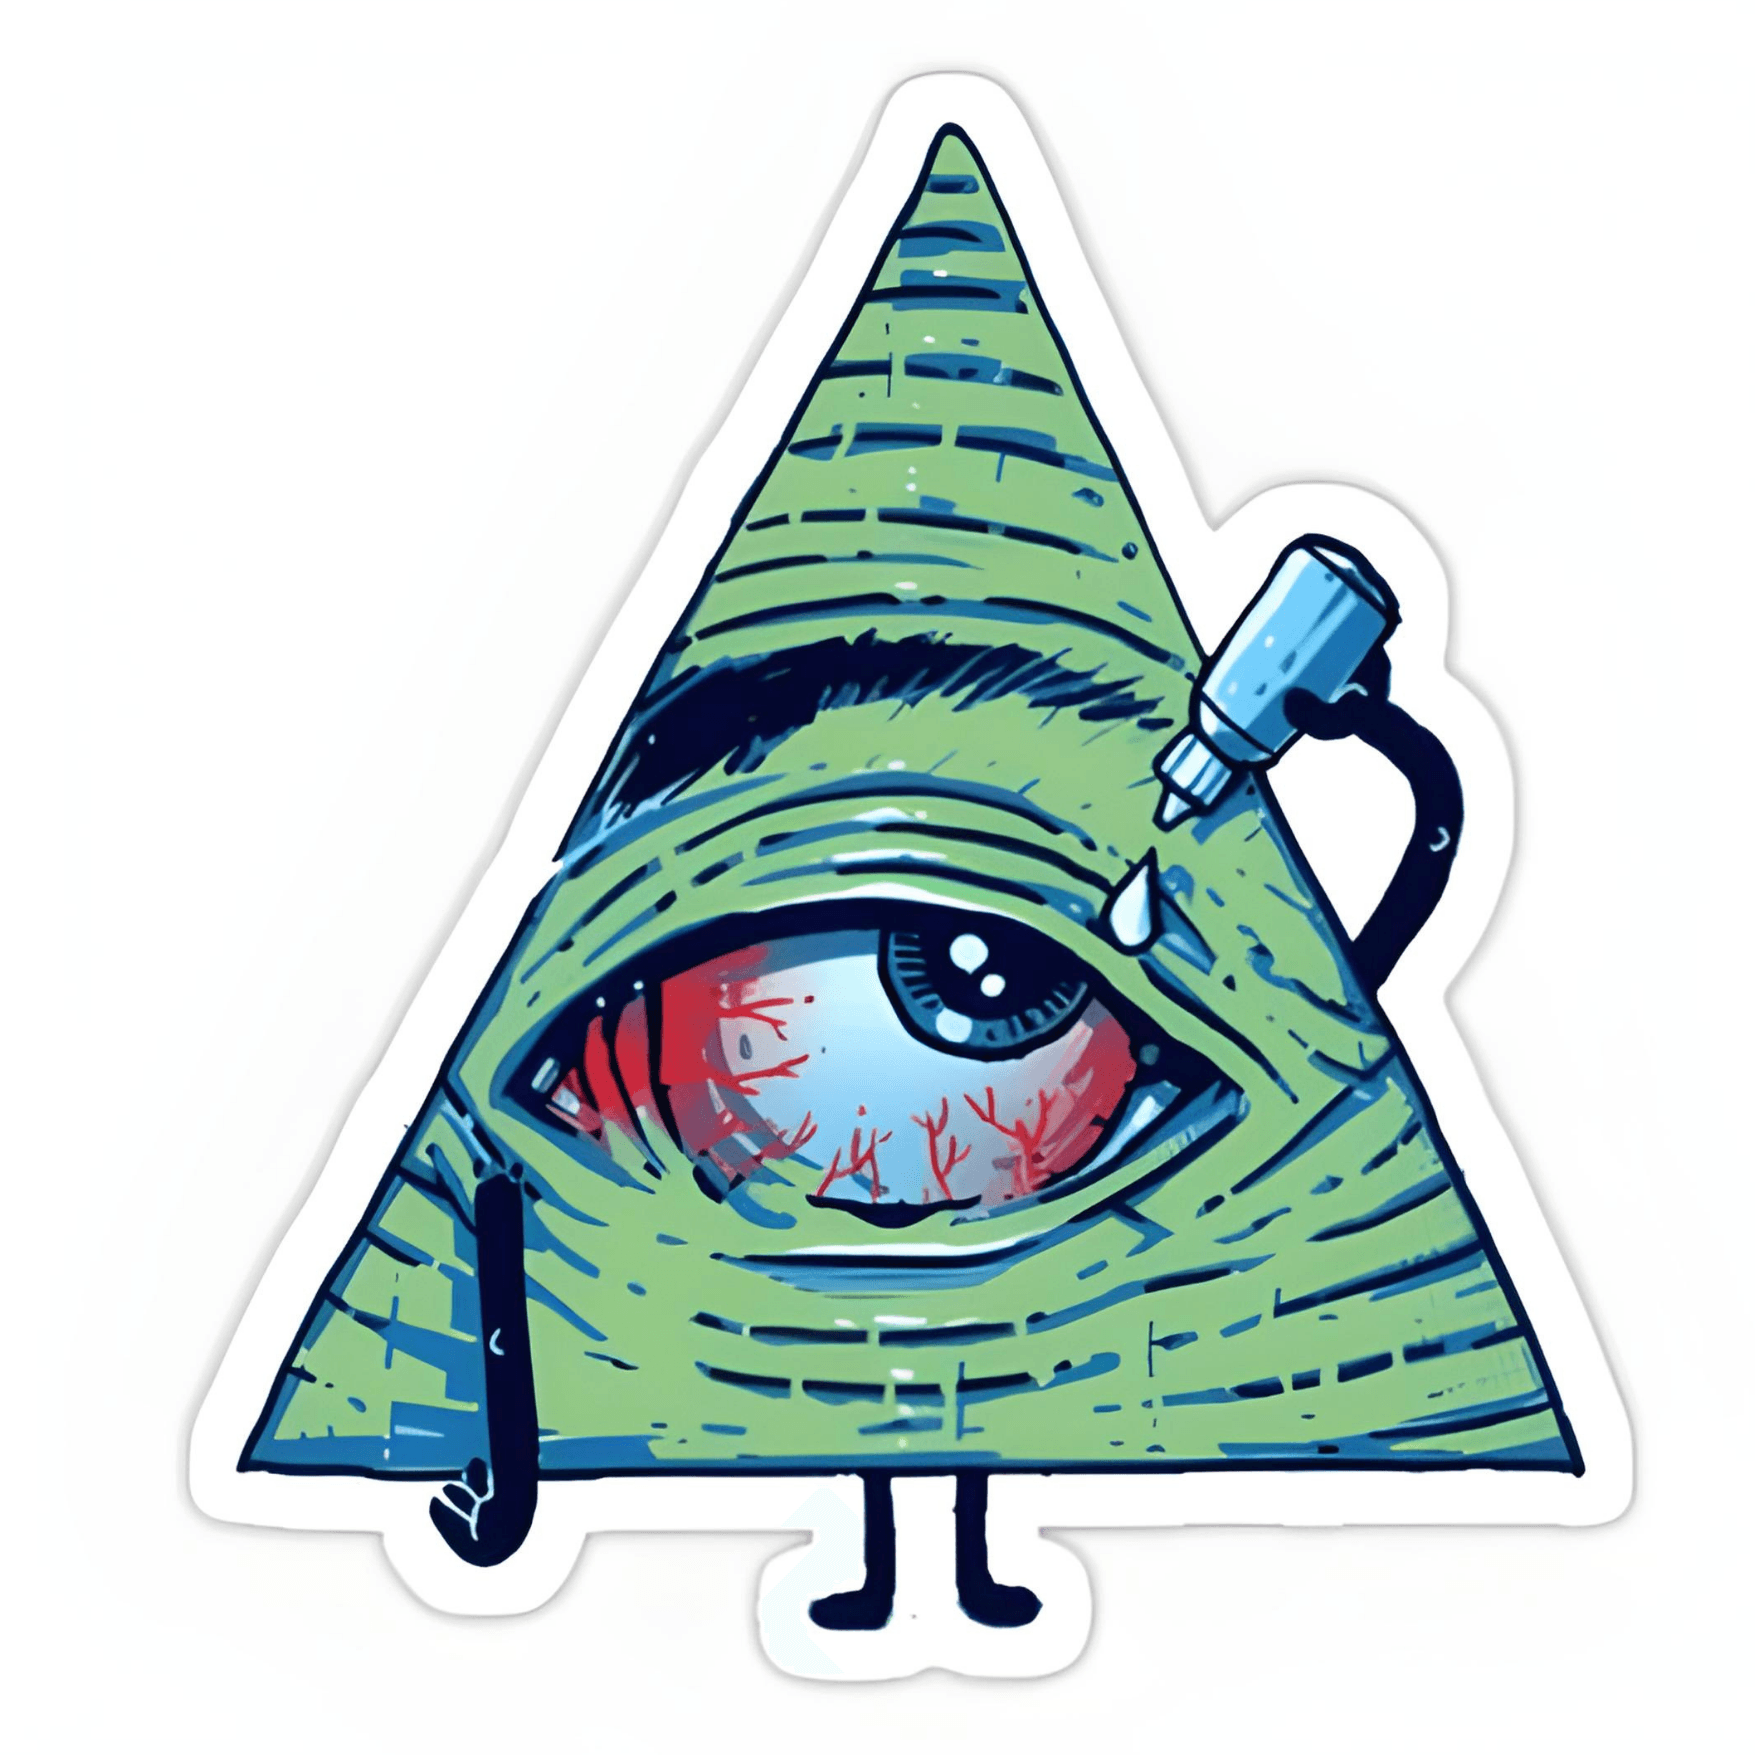 Green Pyramid with eya sticker 6cm